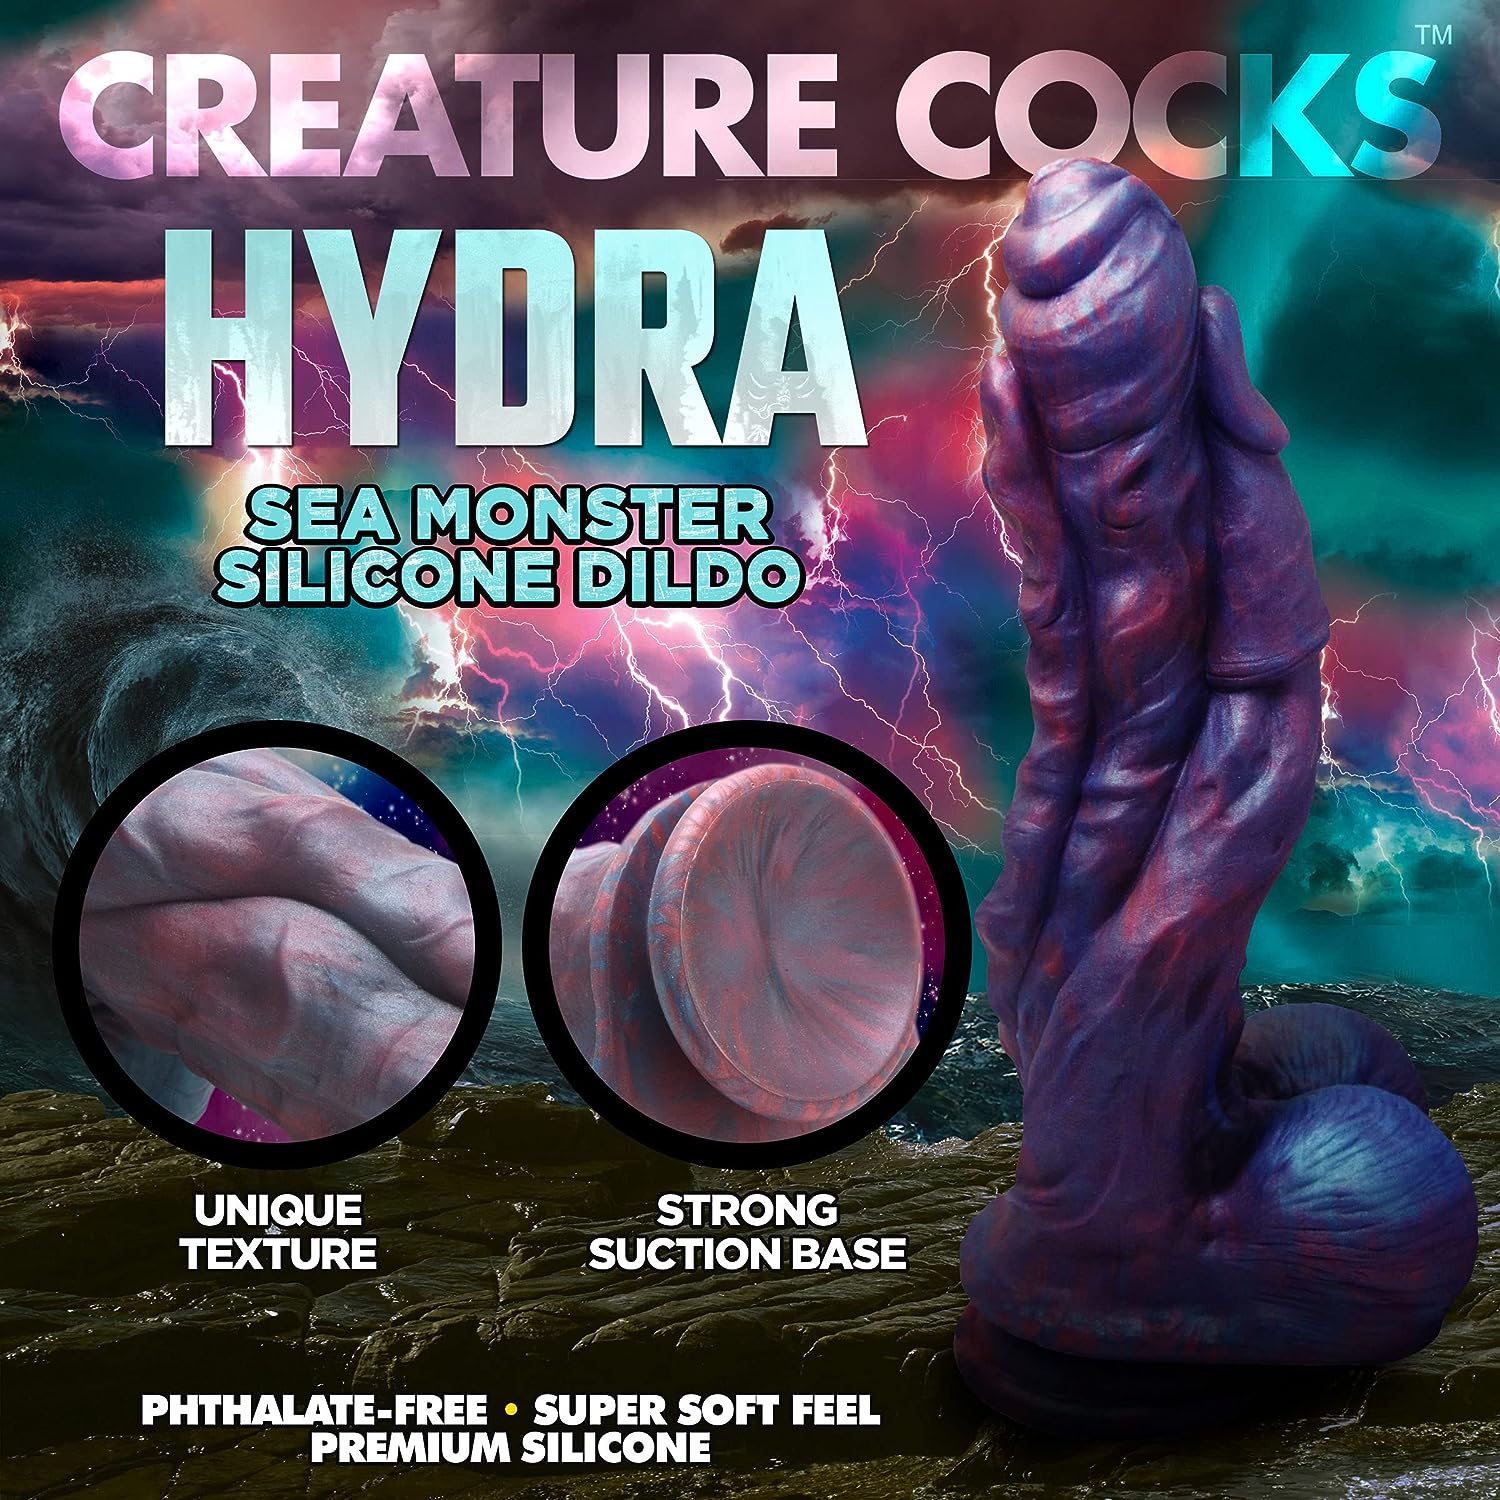 CREATURE COCKS Hydra Silicone Dildo